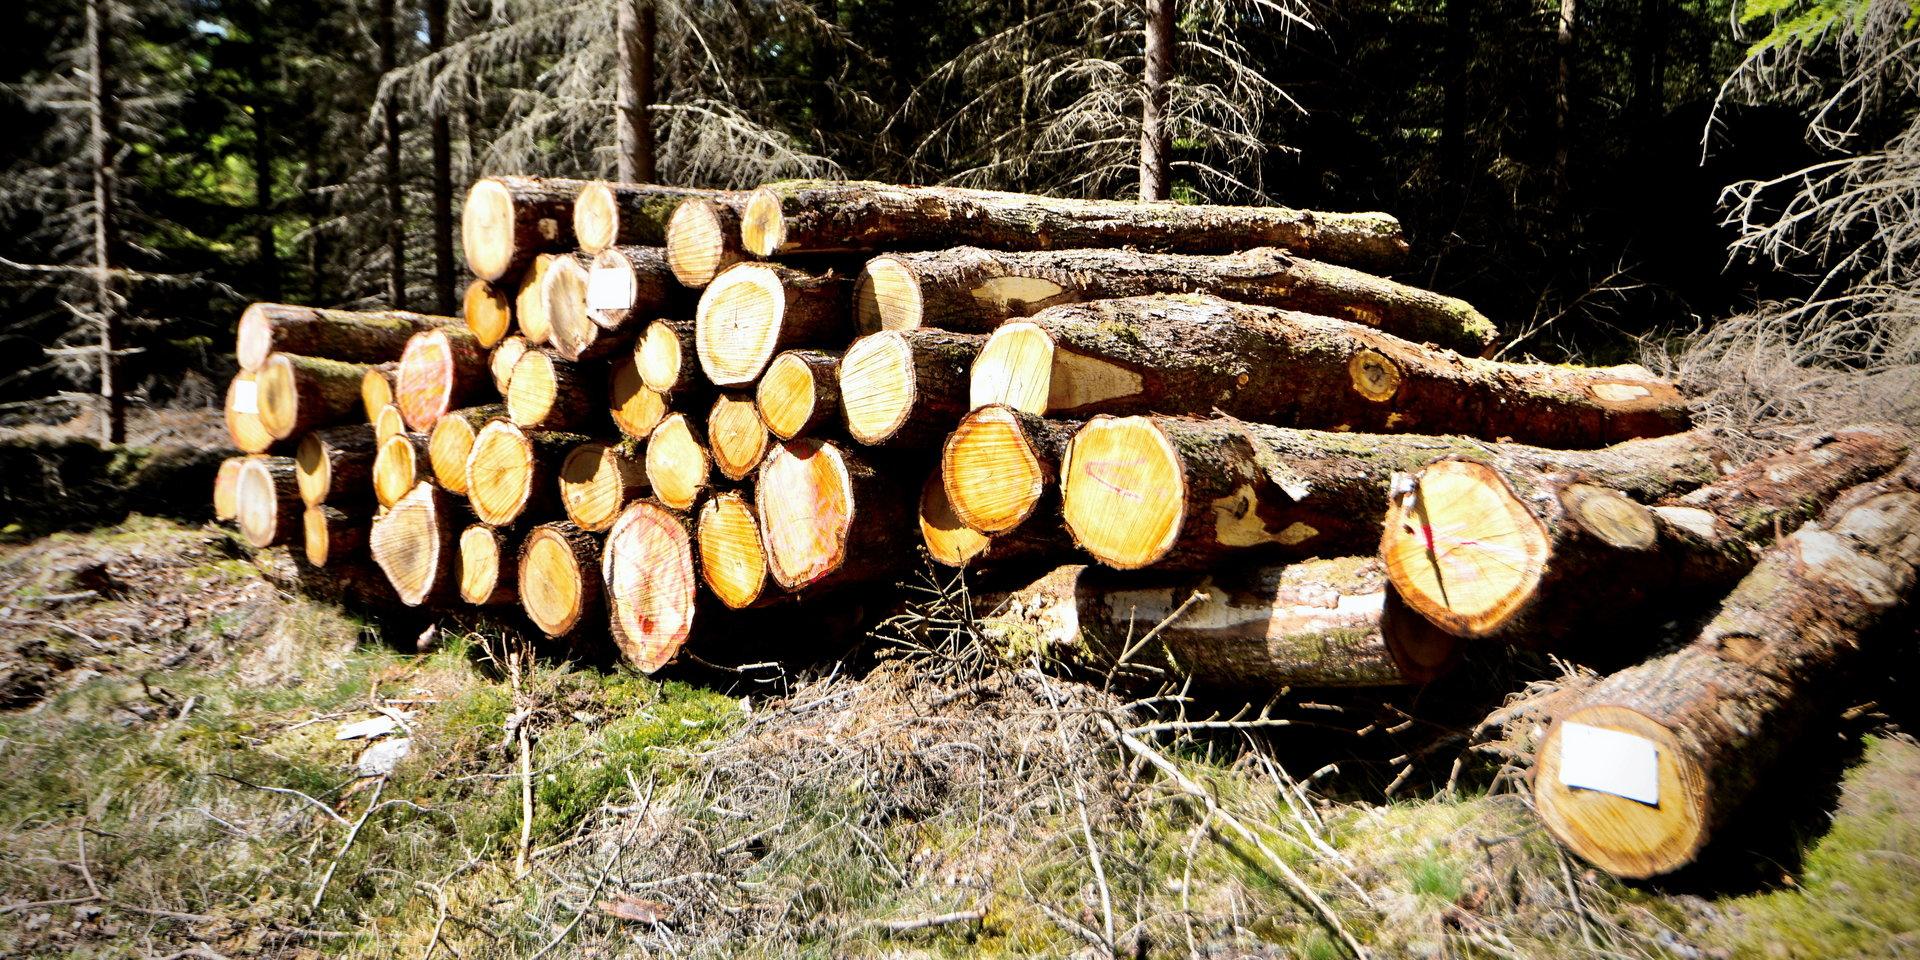 ”I Halland har vi omkring 10 000 enskilda skogsägare som ofta har drivit sina skogsbruk i generationer inom familjen.” 